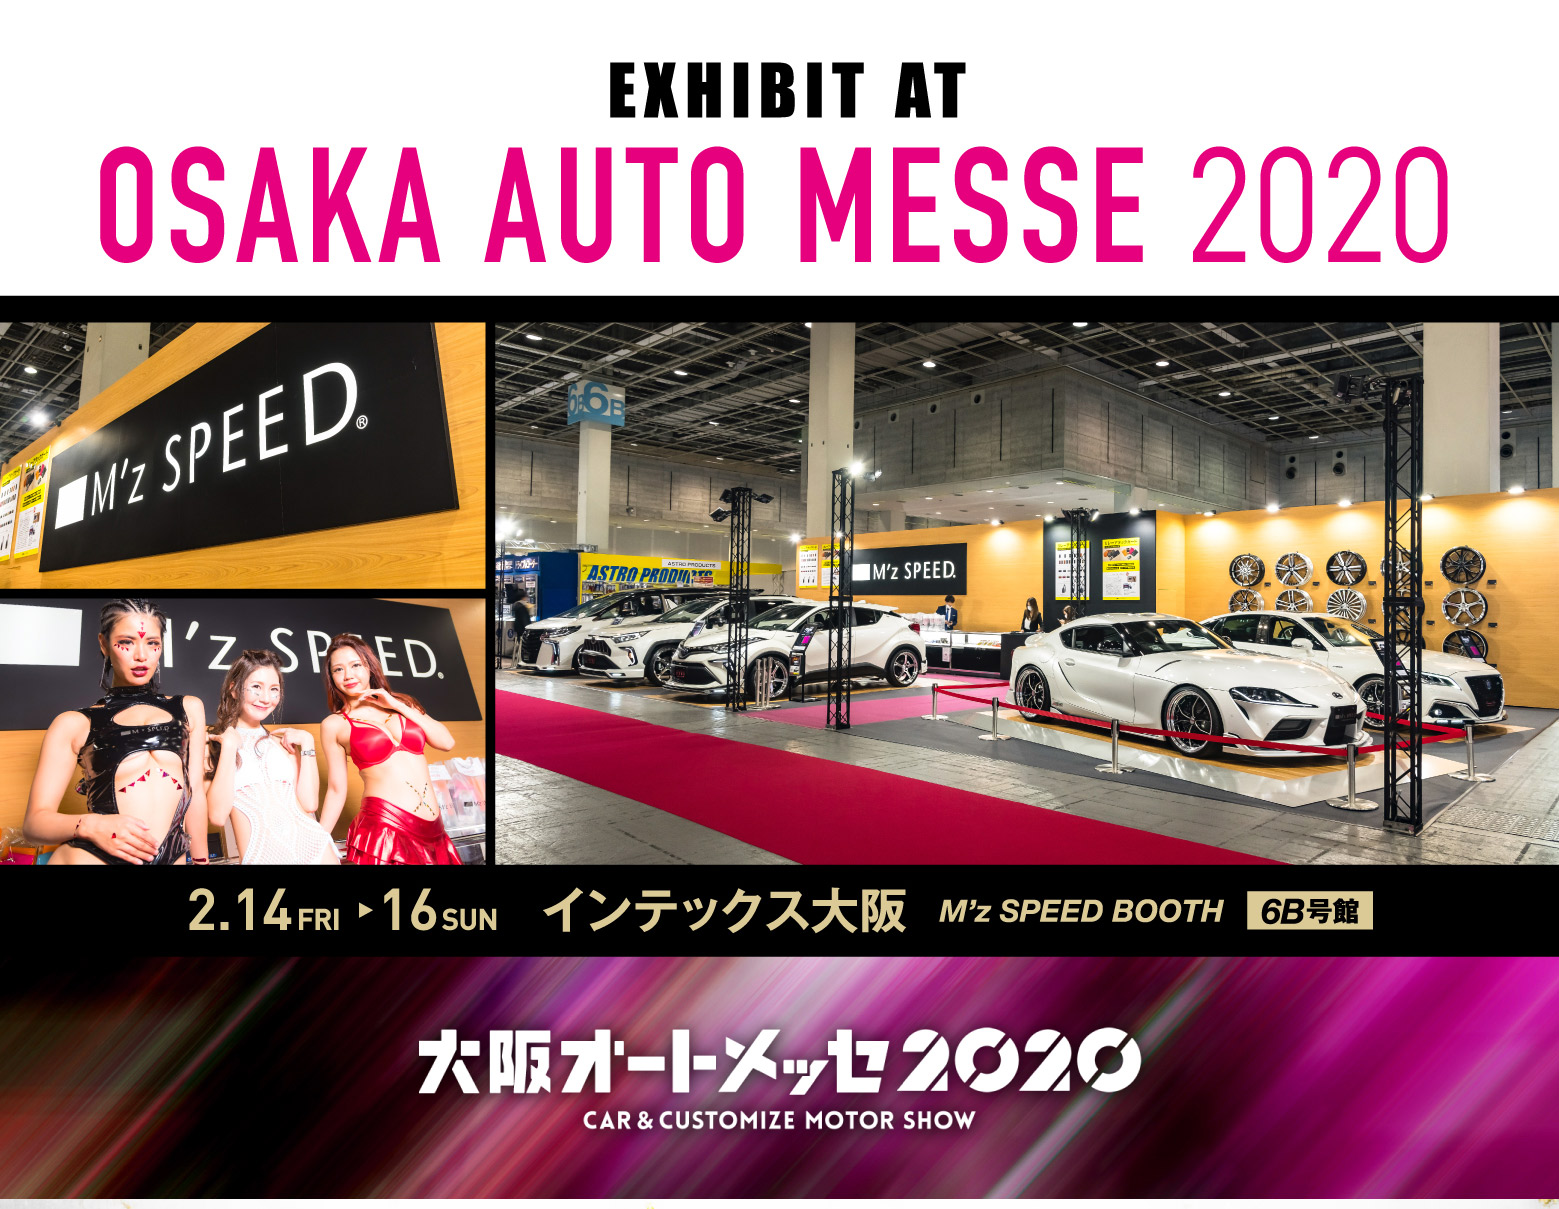 大阪オートメッセ2020 CAR&CUSTOMIZE MOTOR SHOW 大阪オートメッセ2020 開催期間 2020 2.14FRI 15SAT 16SUN ブース インテックス大阪 6B